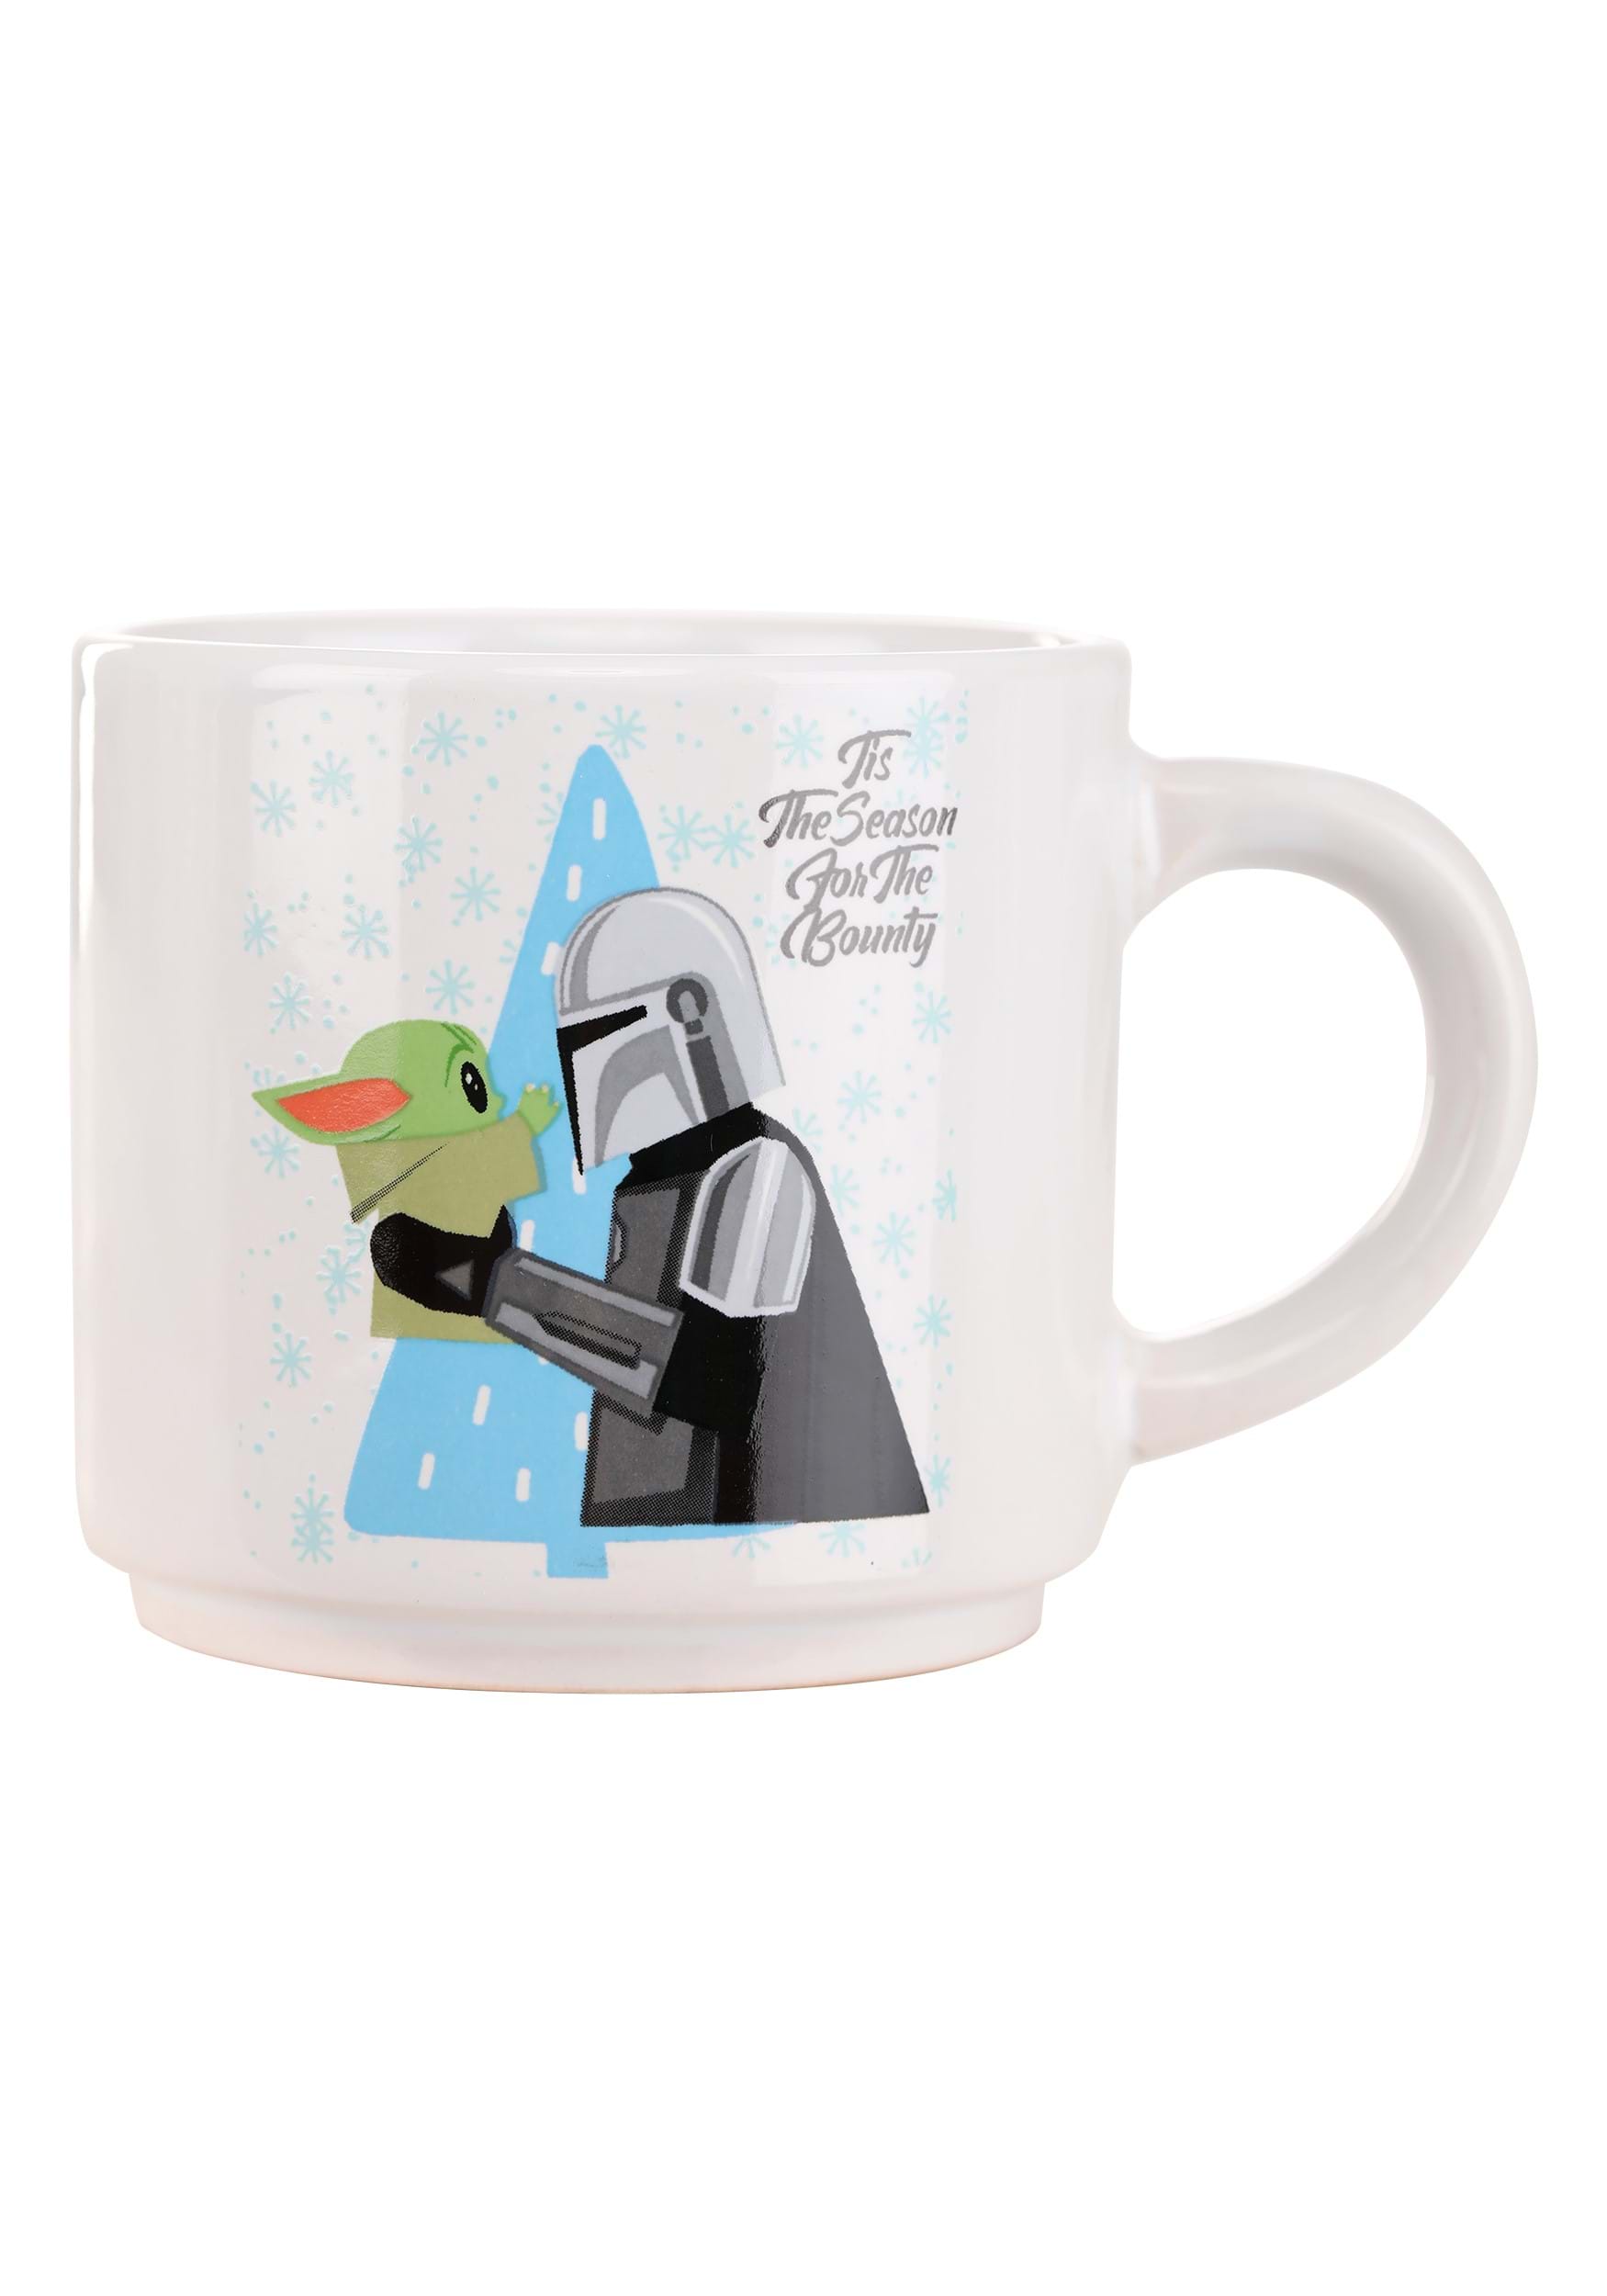 Star Wars 4pc Mug Set